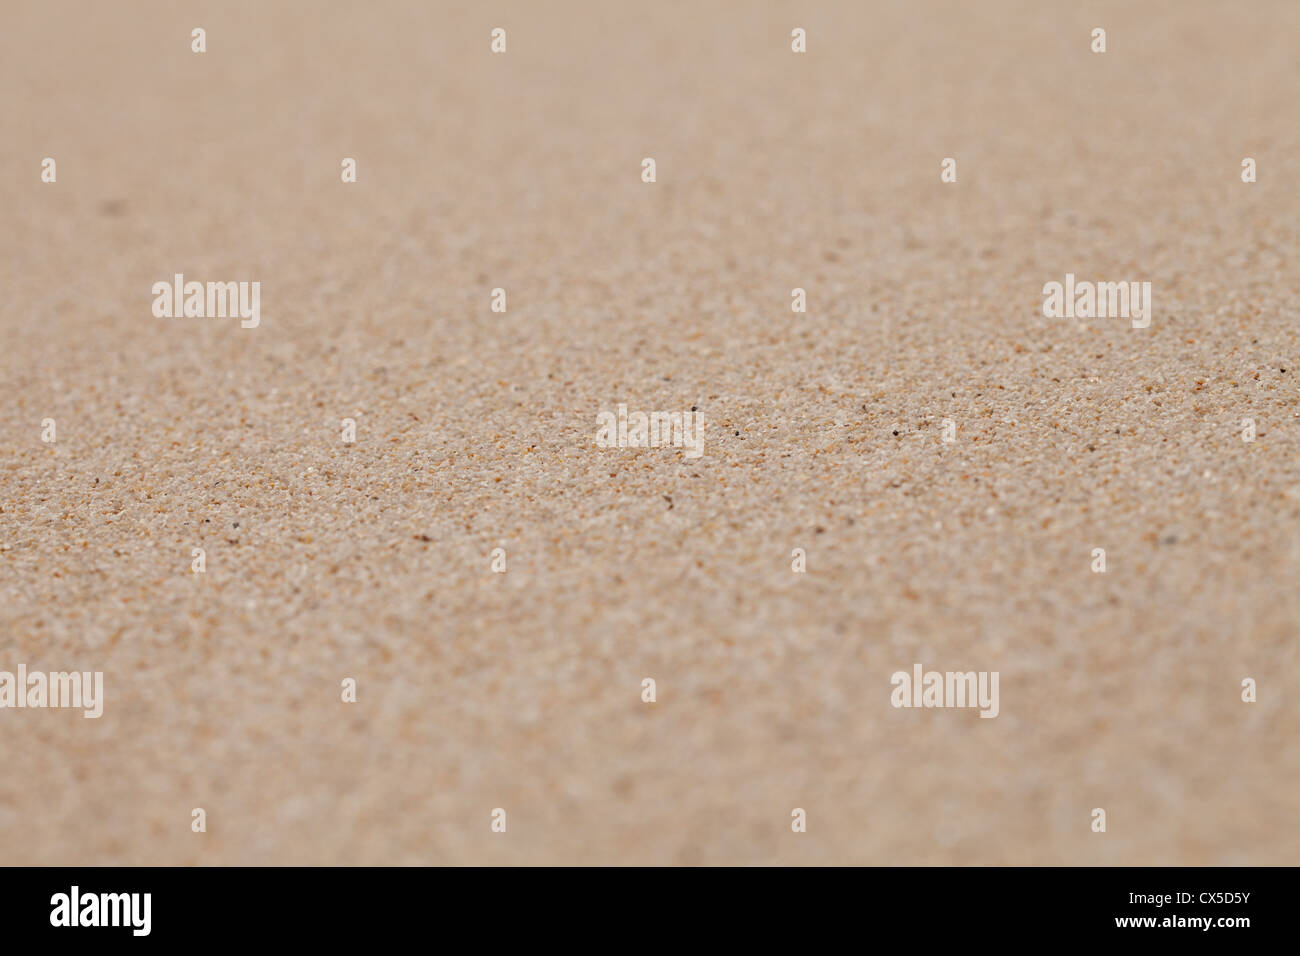 Playa de arena seca y limpia fondo con foco estrecho Foto de stock